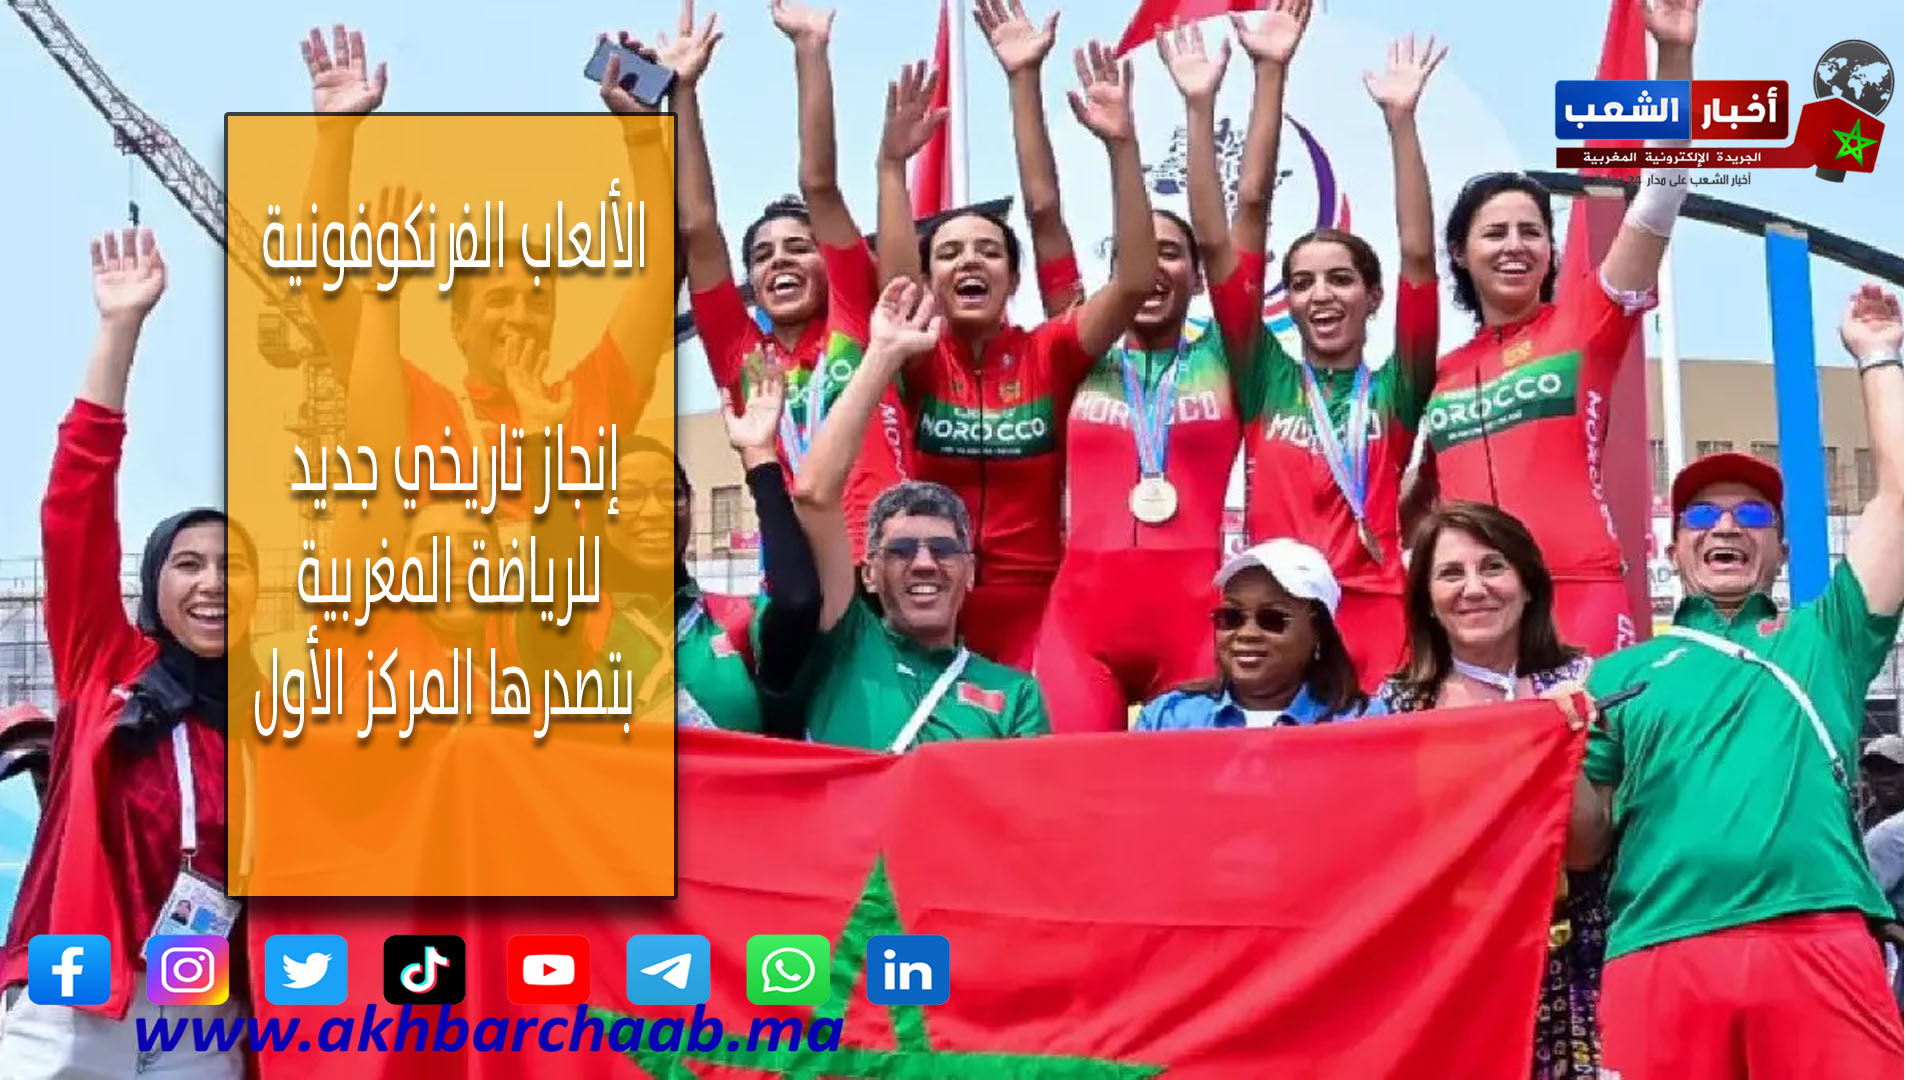 الألعاب الفرنكوفونية .. إنجاز تاريخي جديد للرياضة المغربية بتصدرها المركز الأول